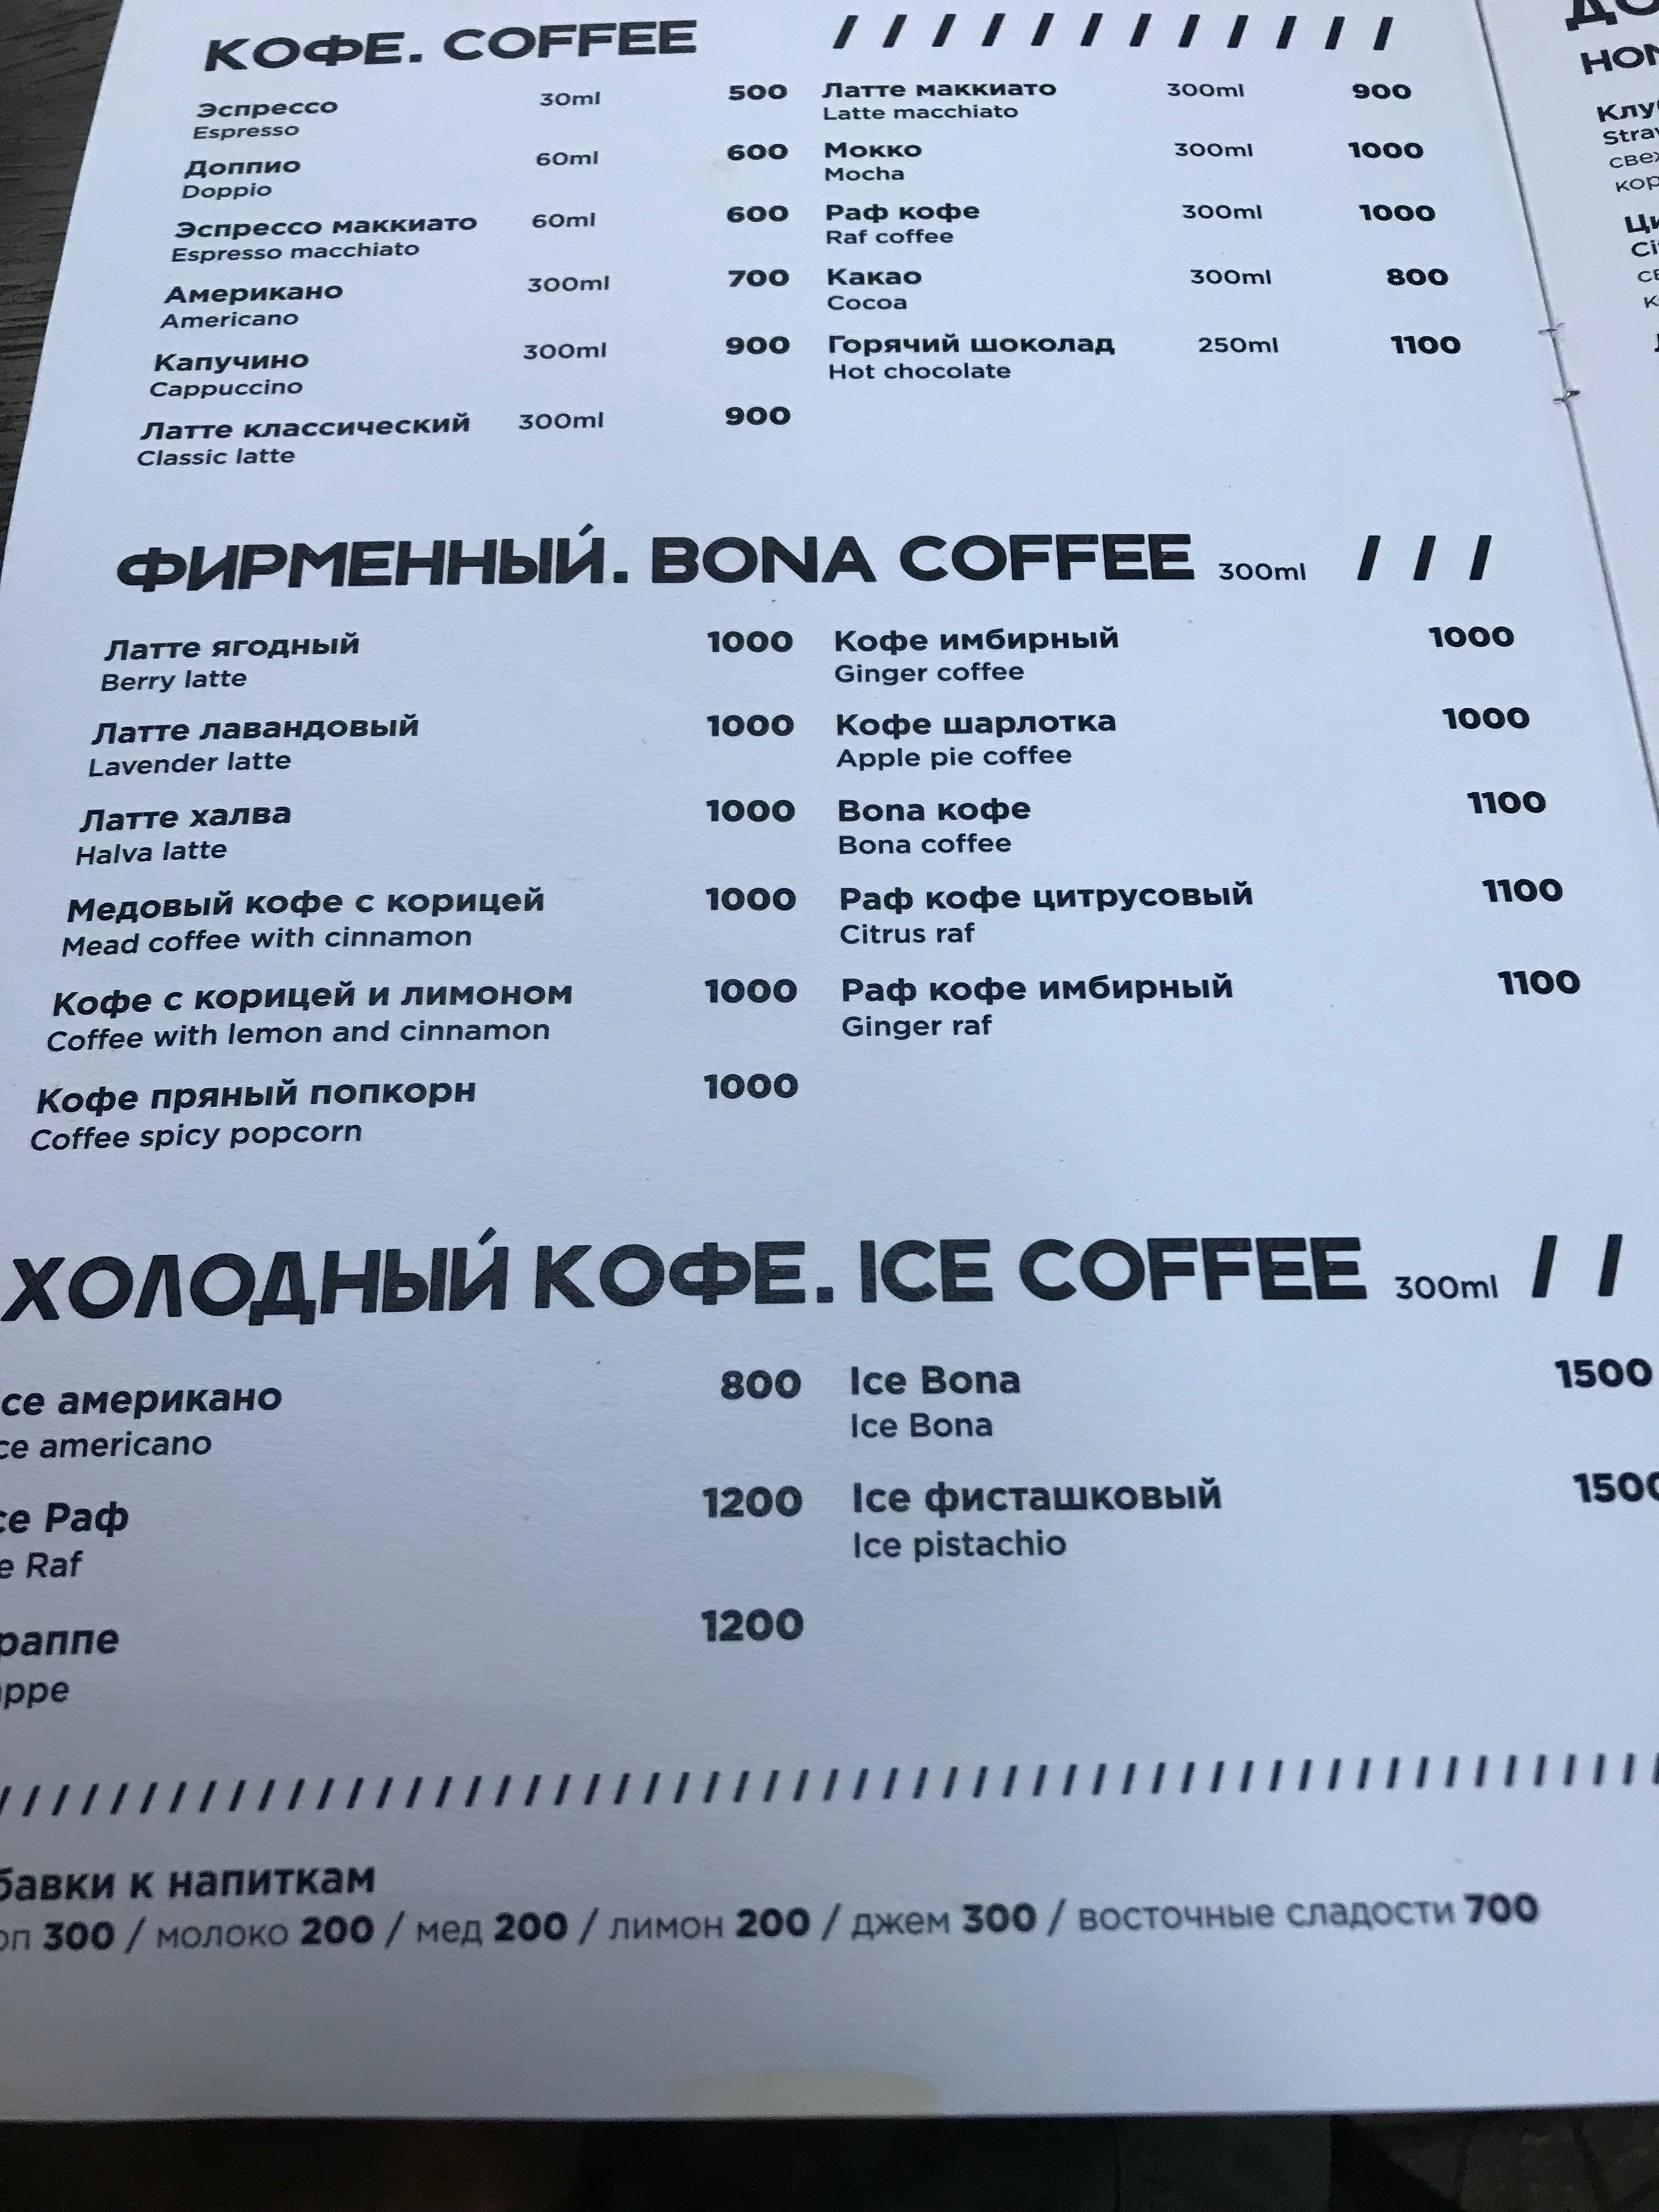 BONA COFFEE